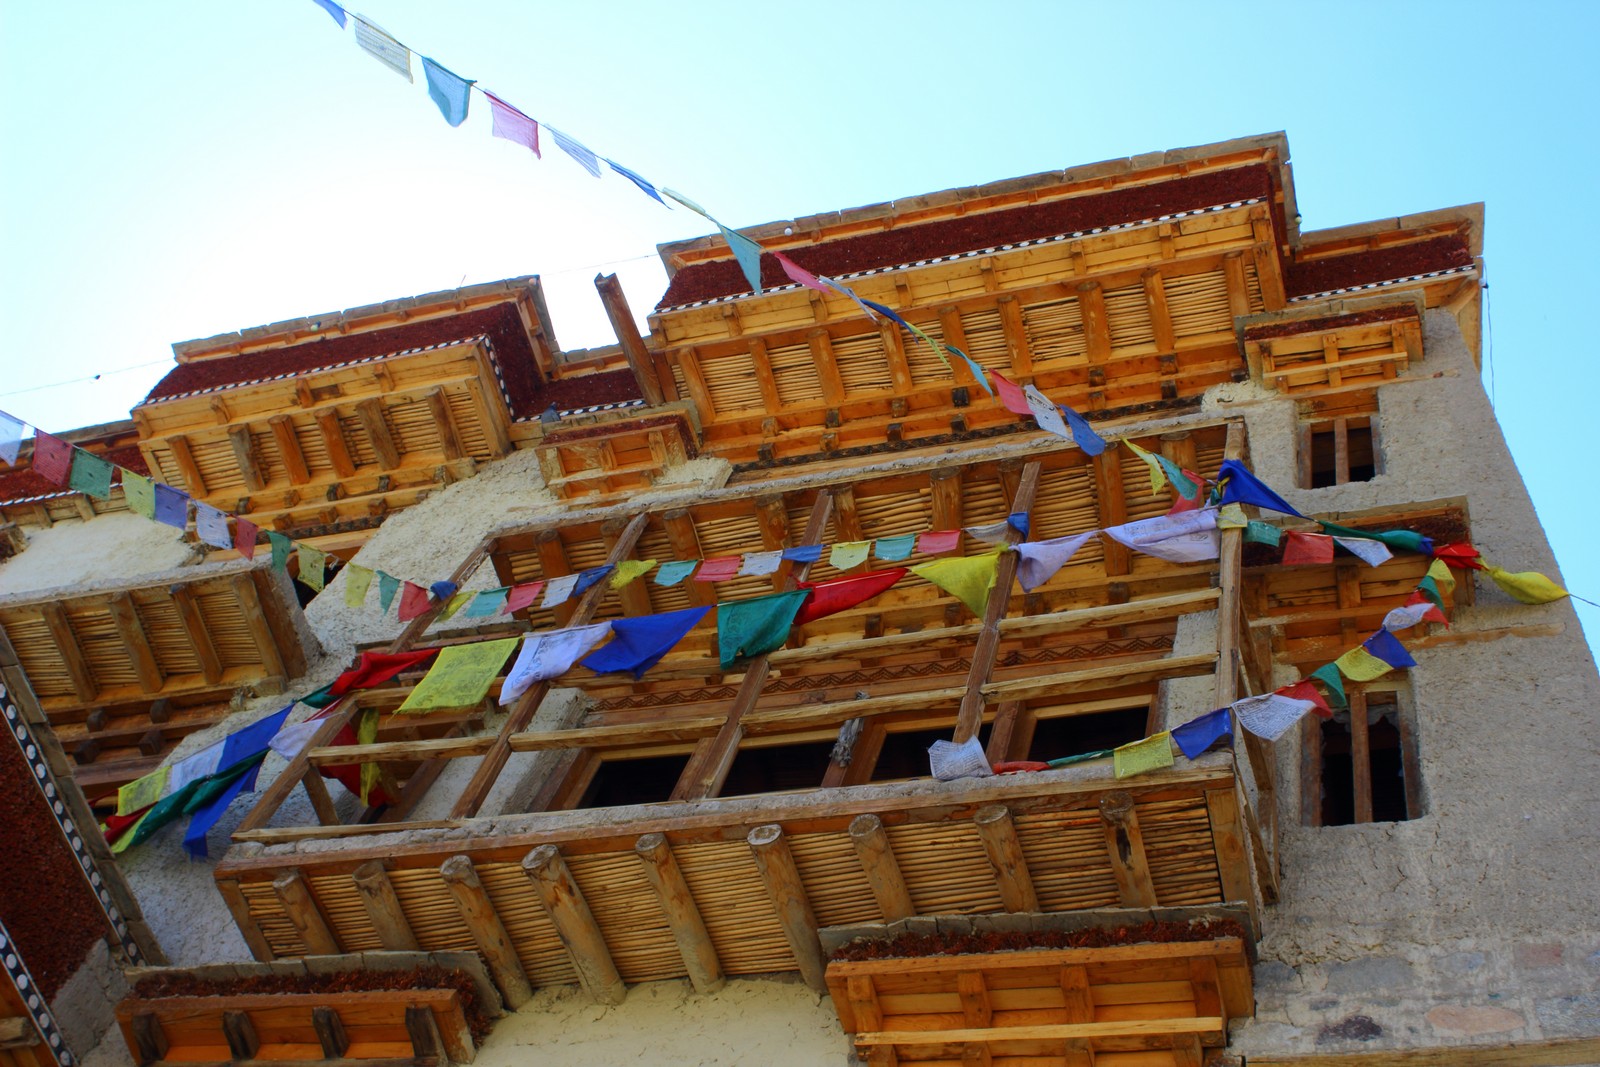 Shey Monastery - 15km from Leh